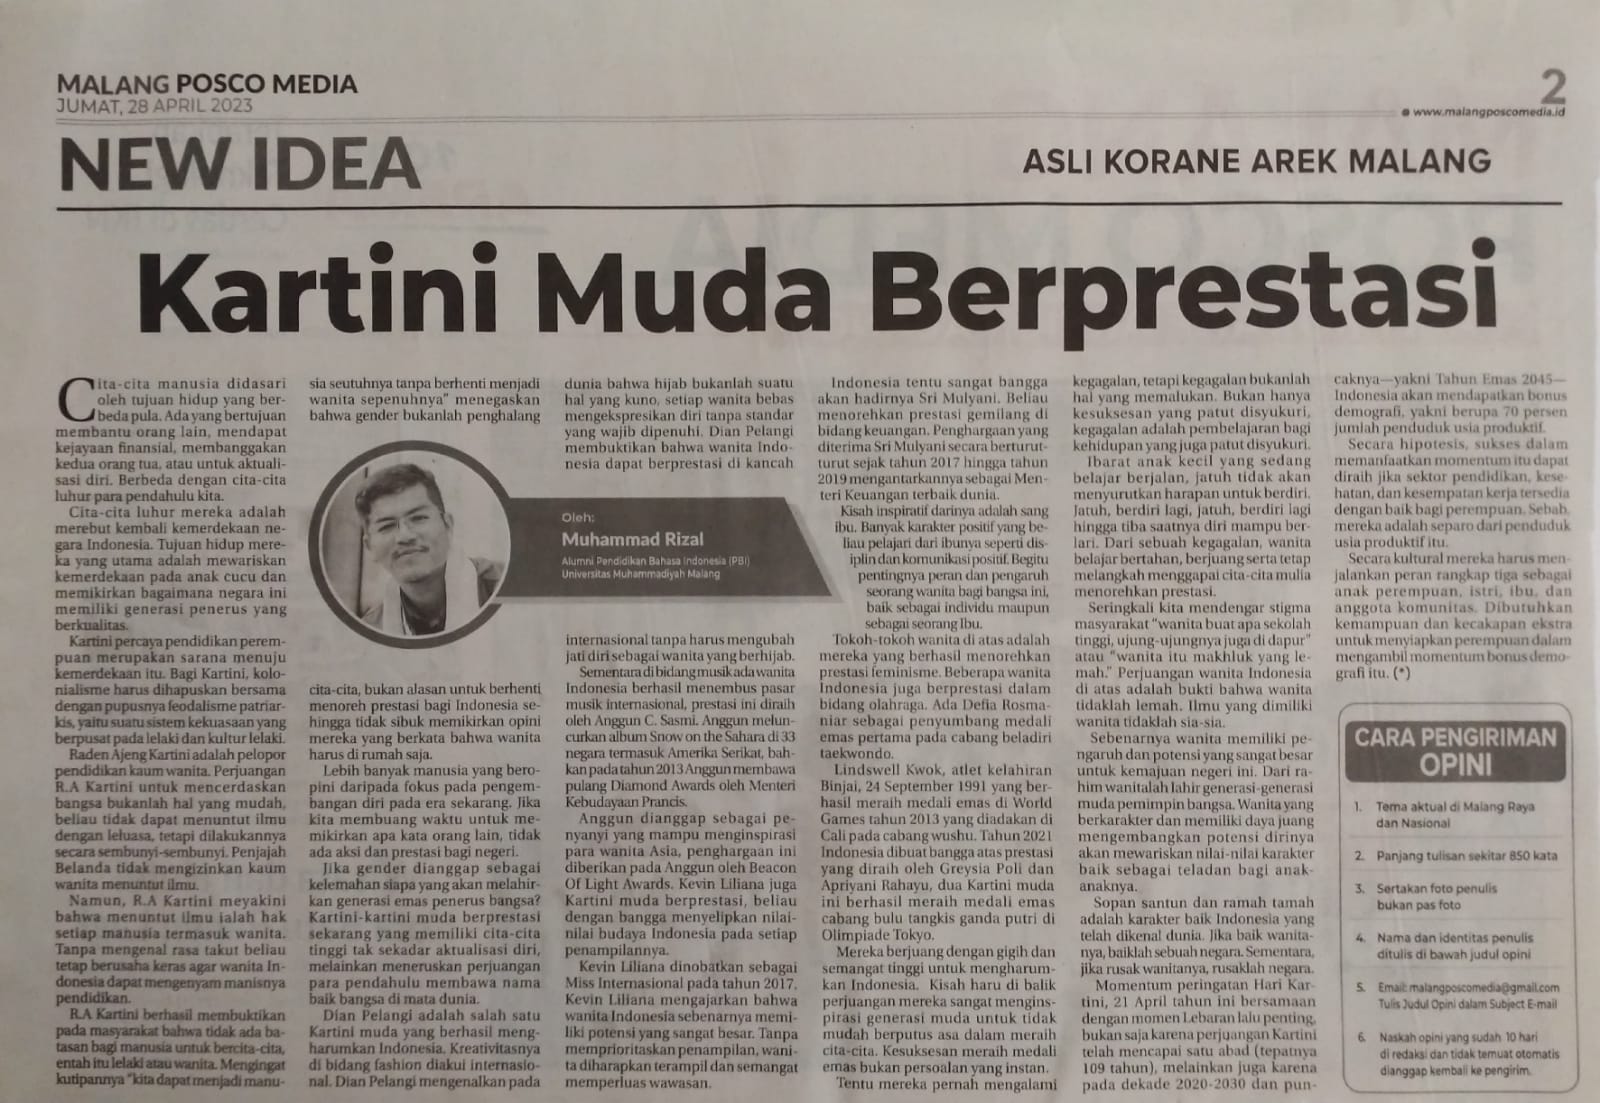 Kartini Muda Berprestasi Malang Posco Media Umm Dalam Berita Koran